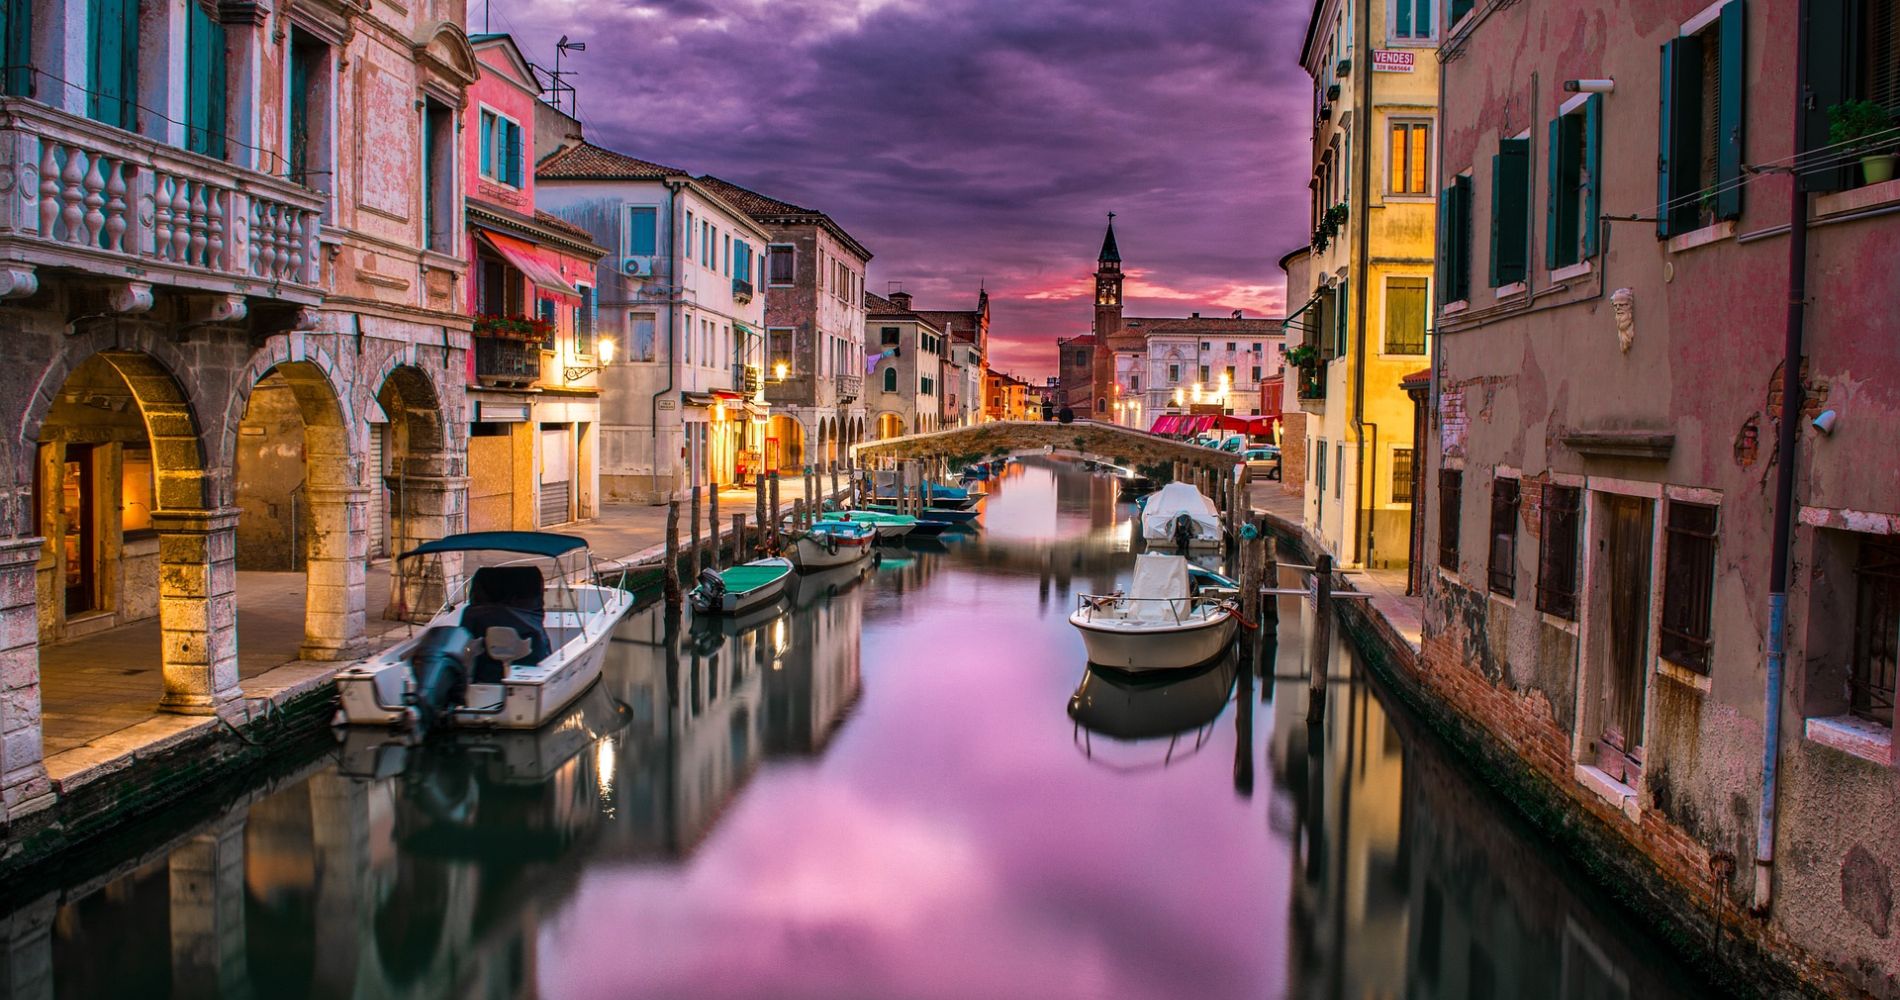 Background Image - Italy